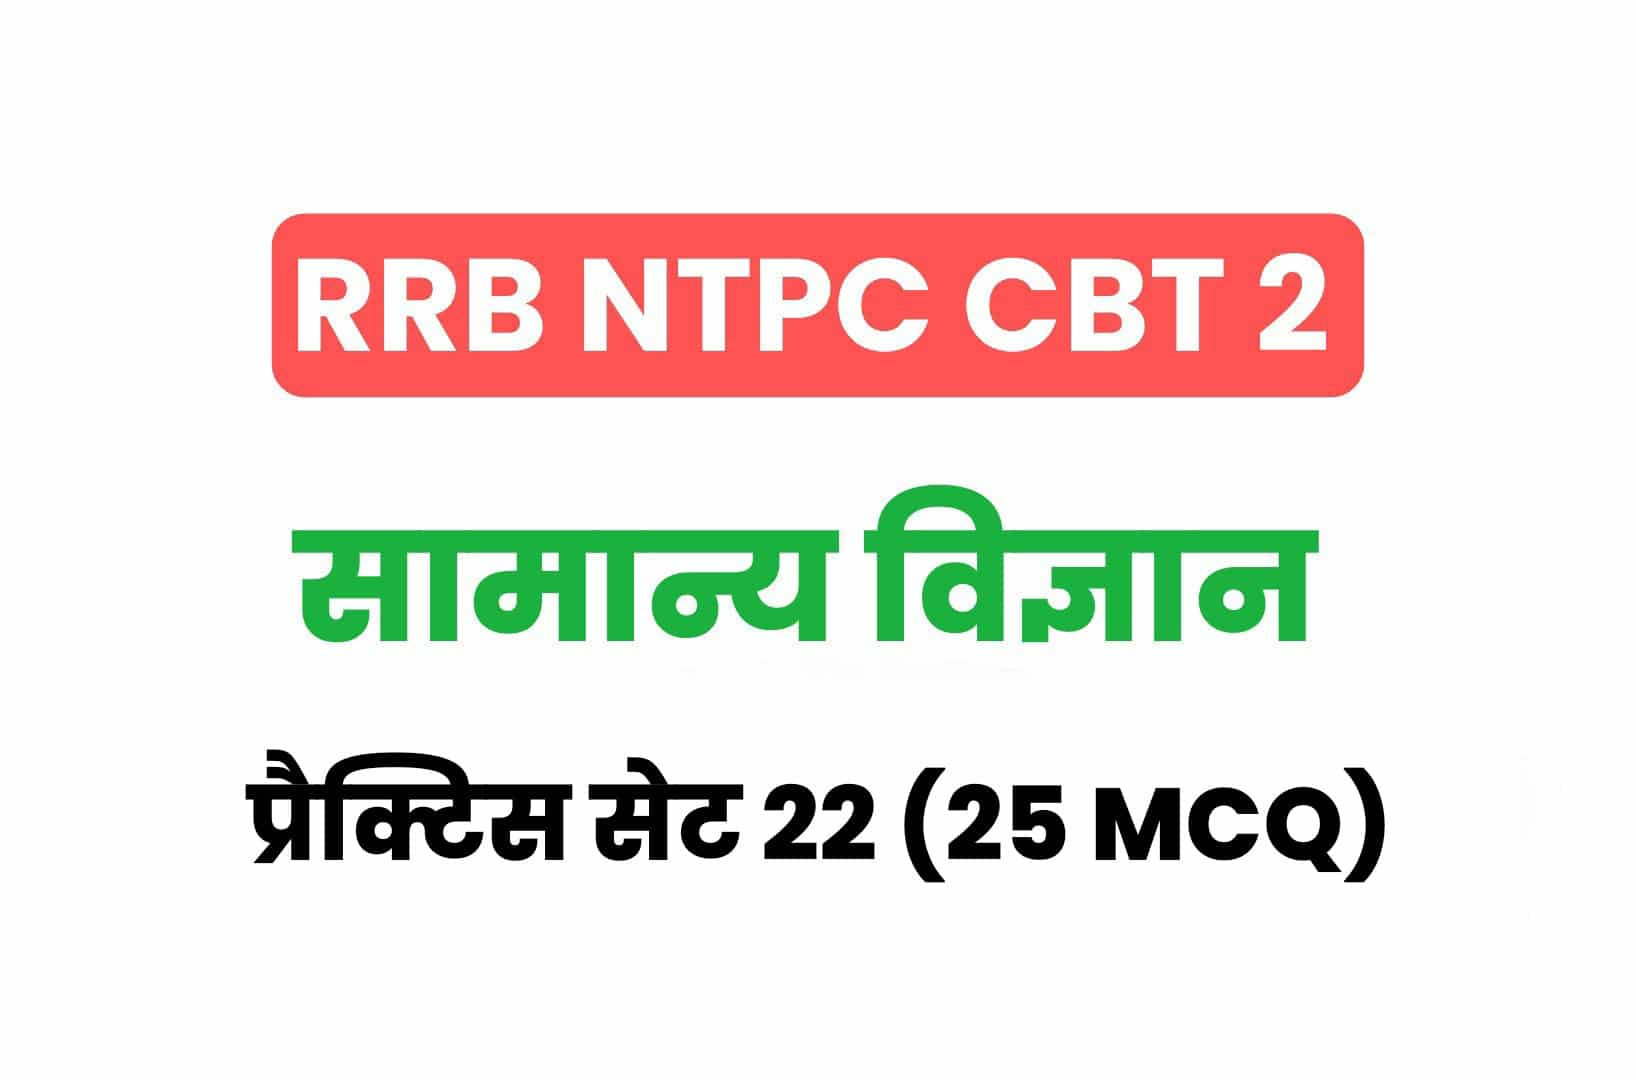 RRB NTPC CBT 2 Science प्रैक्टिस सेट 22: सामान्य विज्ञान के महत्वपूर्ण प्रश्न, करें अध्ययन